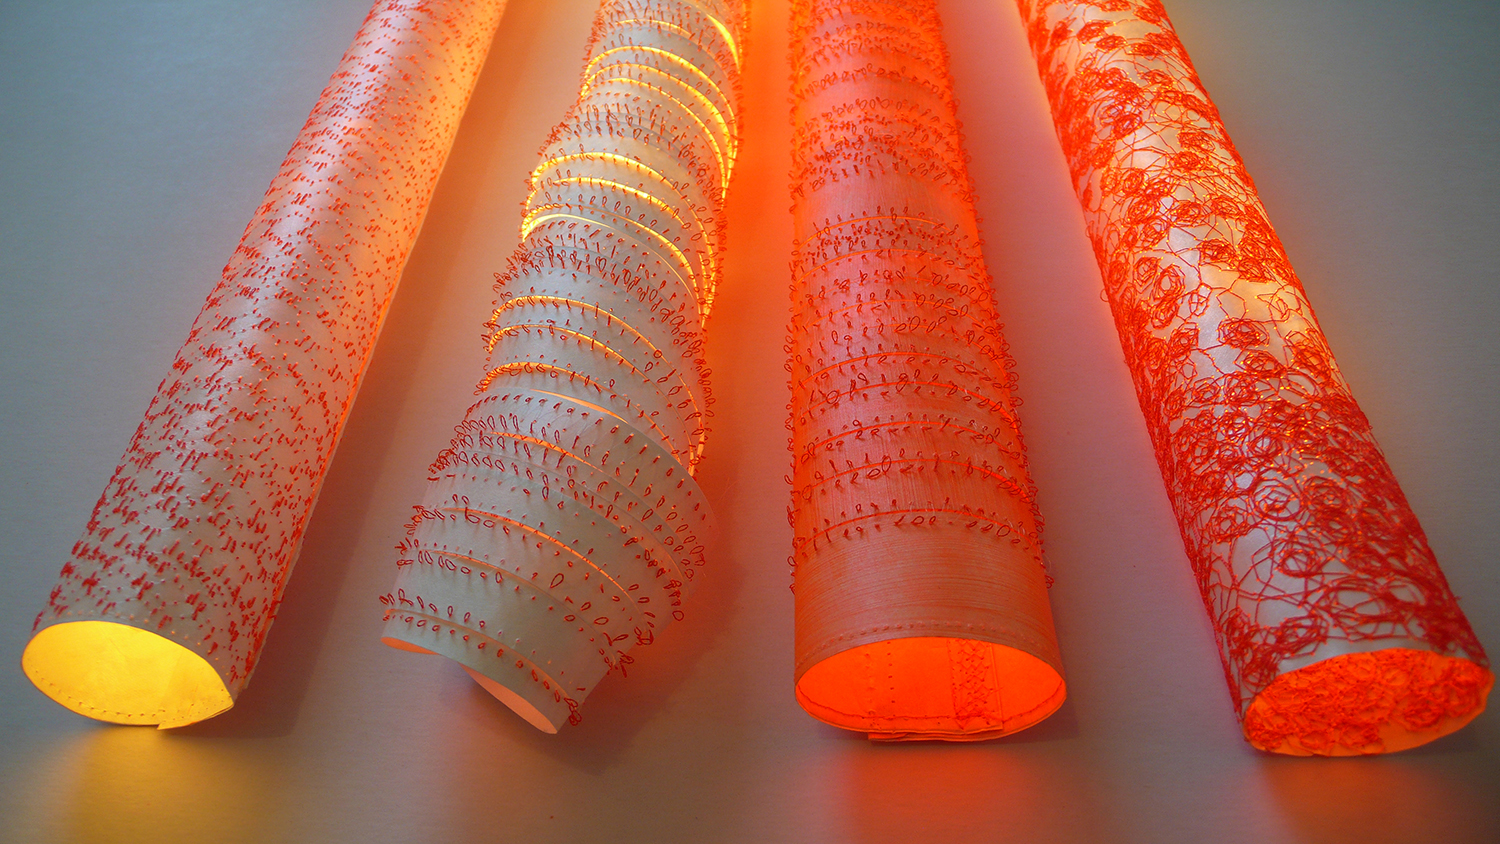 NEONRÖHREN (neon tubes) by Ute Wolff - Creative Work